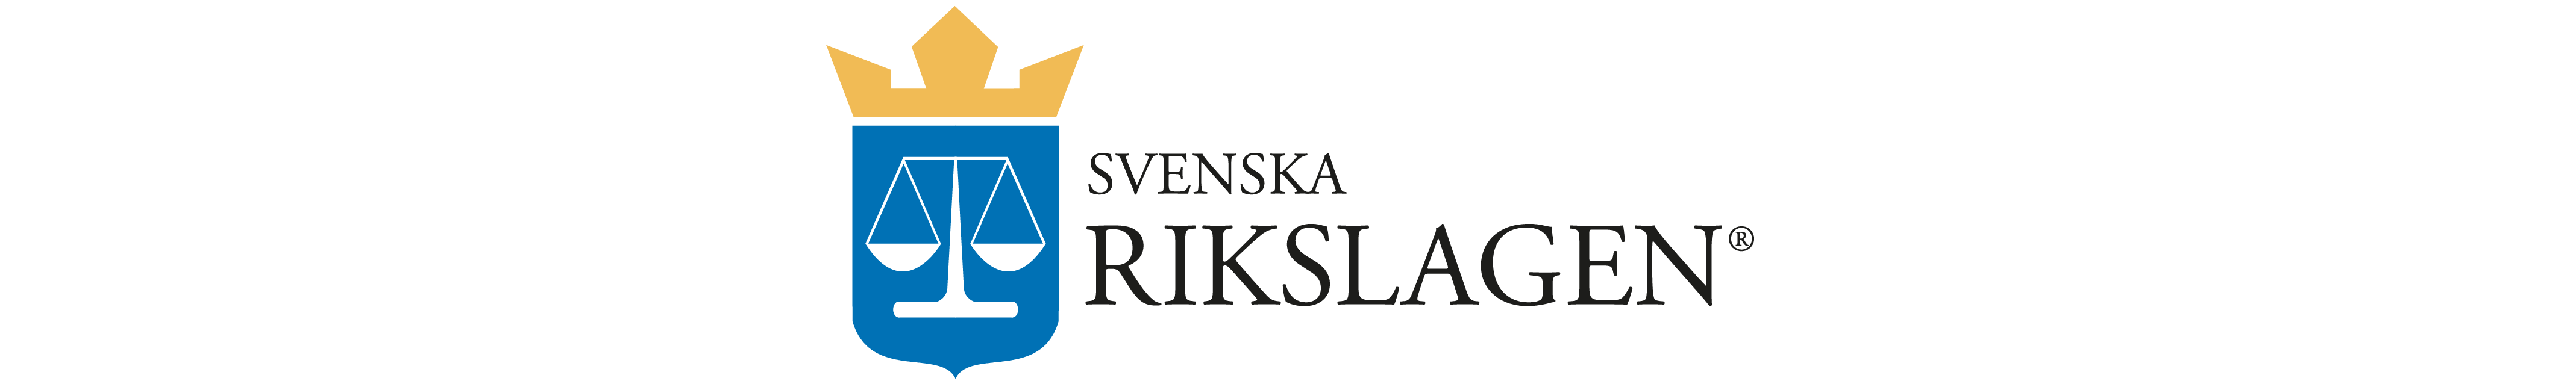 Partisymbol för partiet Svenska Rikslagen.